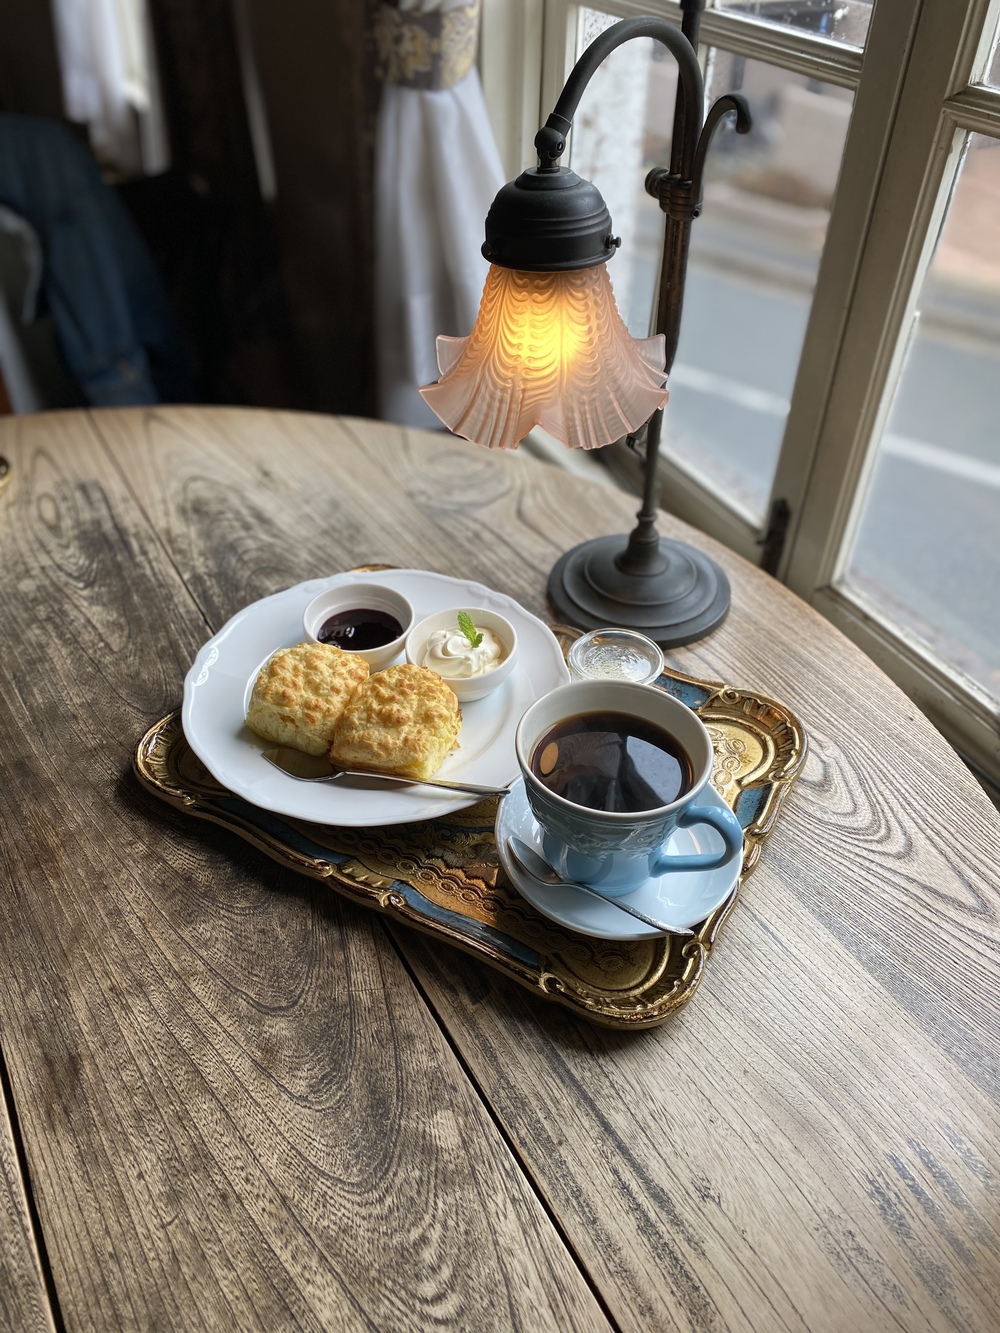 8/28   10時〜　大阪市内の素敵カフェで朝活しませんか？☺️
（他の媒体でも募集をかけていて、
現在、男性2名、女性1名集まっています。）